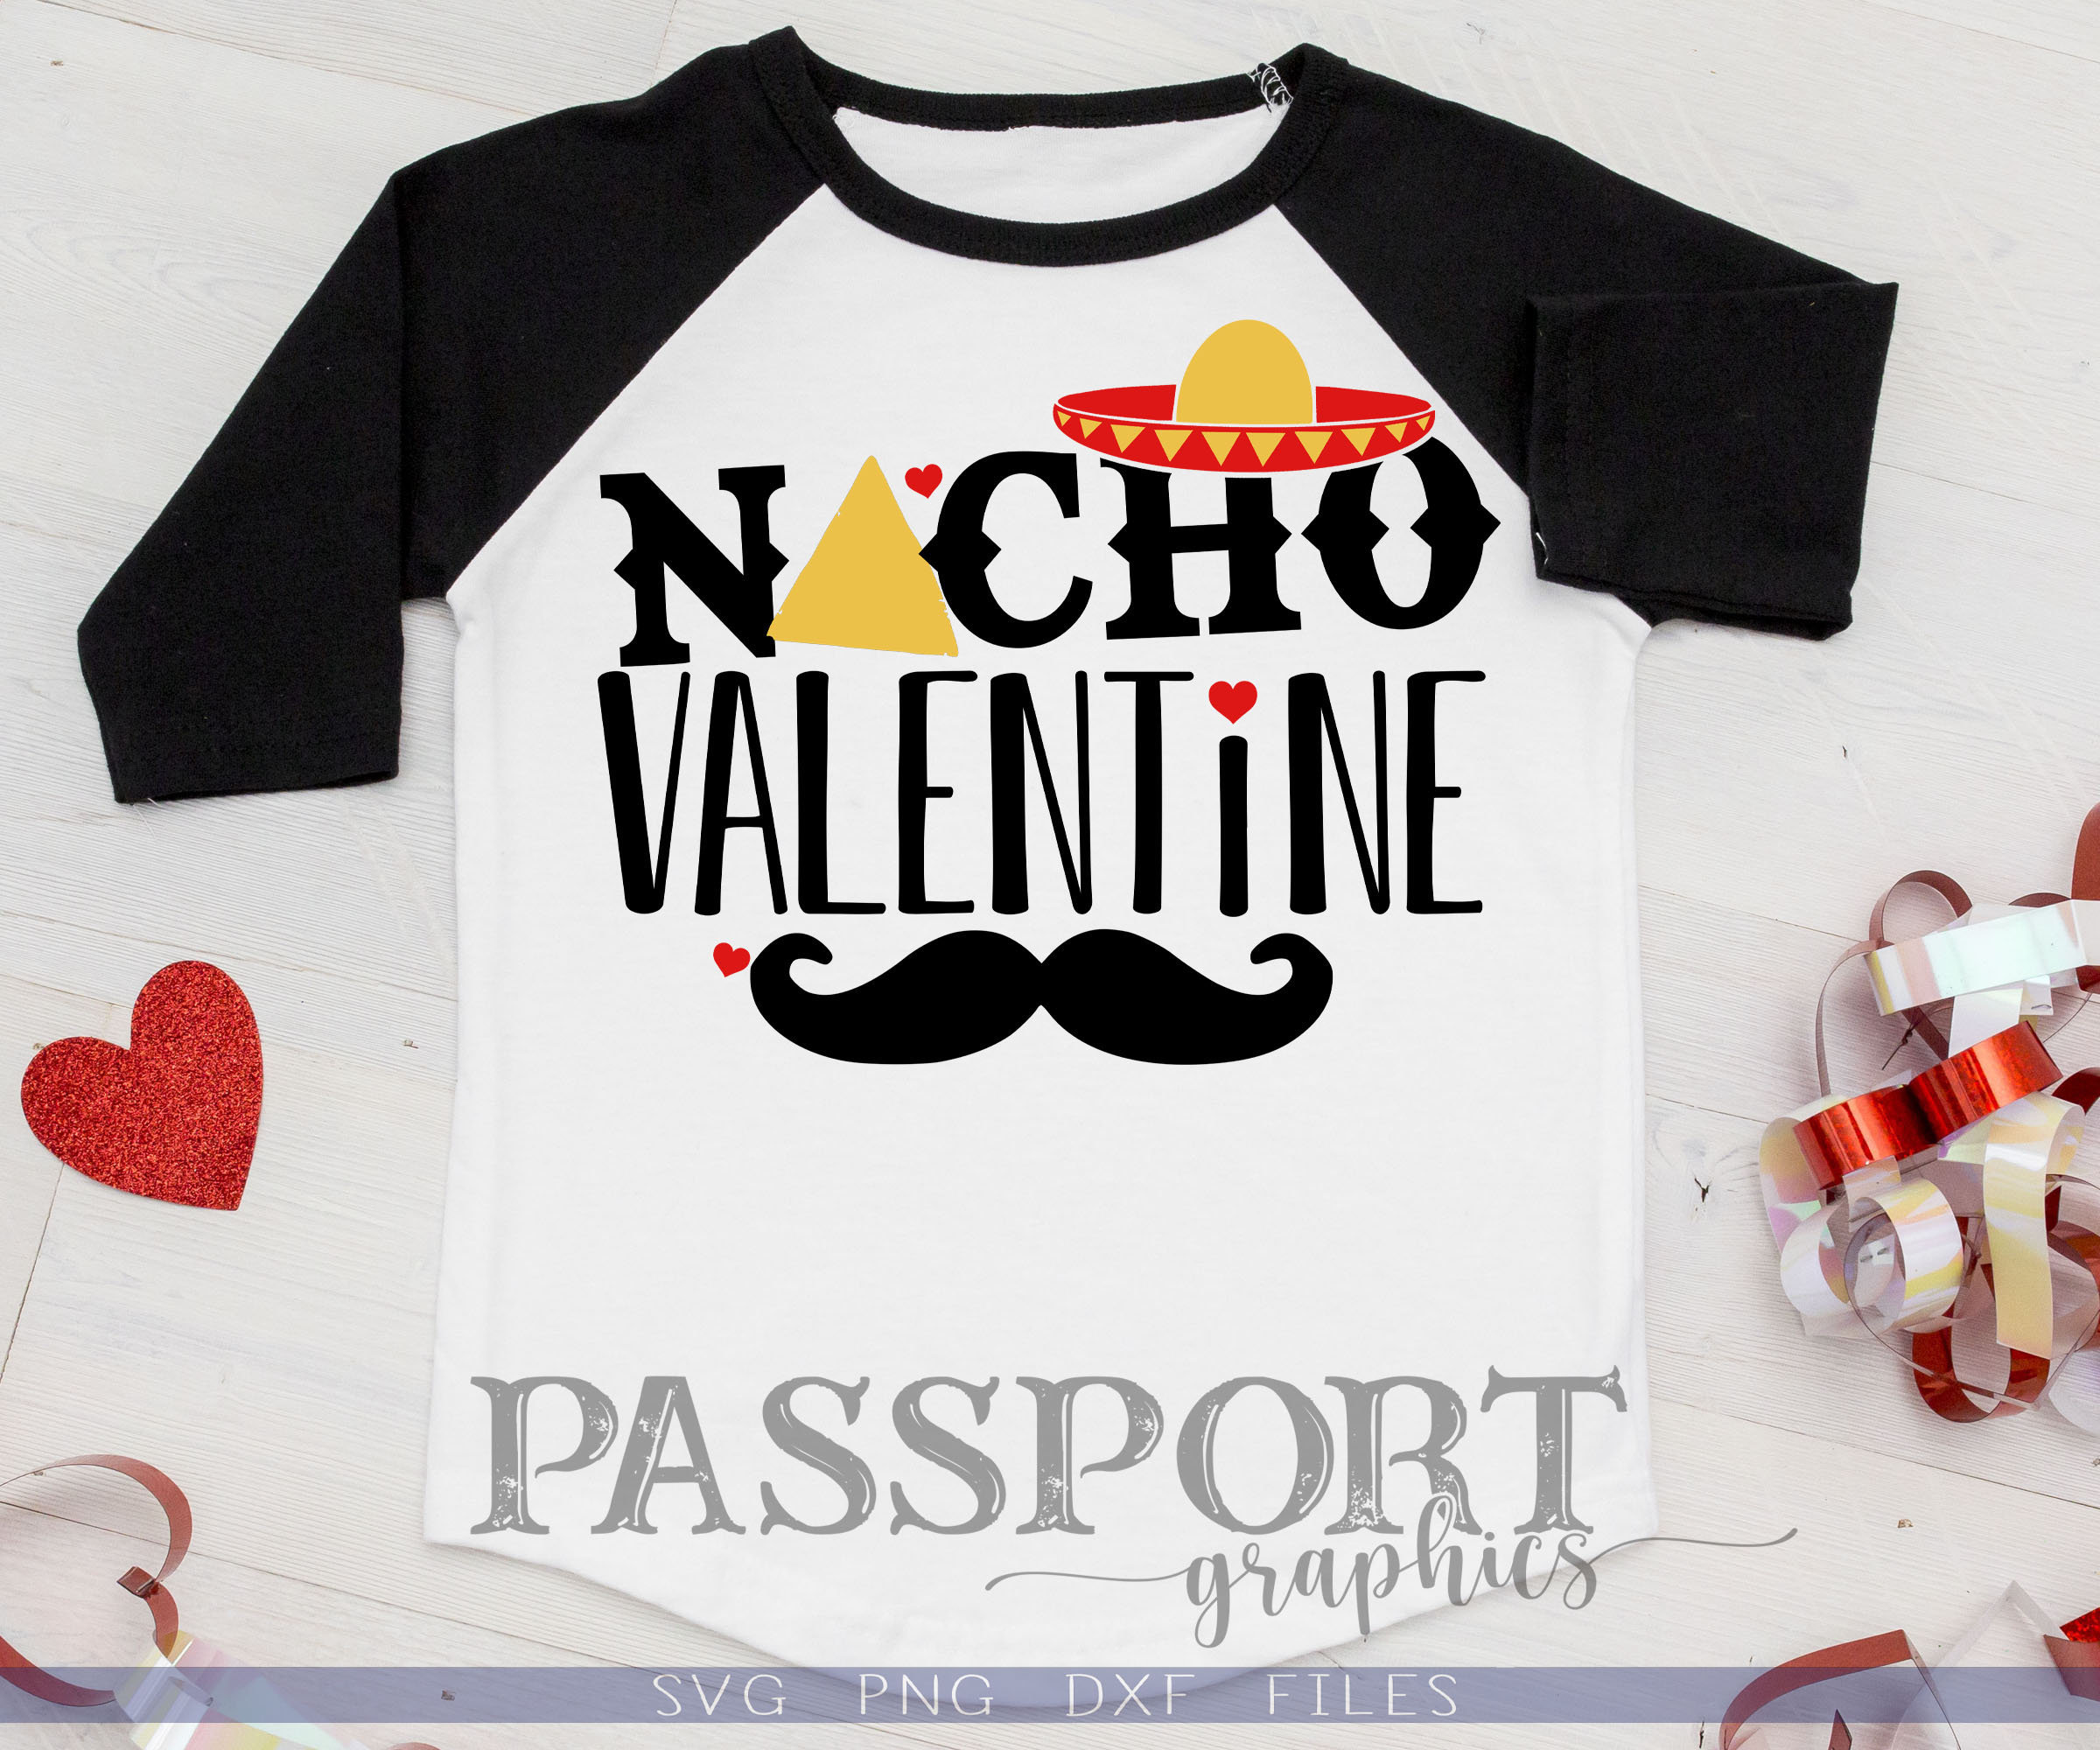 Download Nacho Valentine Svg süße Kinder Valentines SVG Chip ...